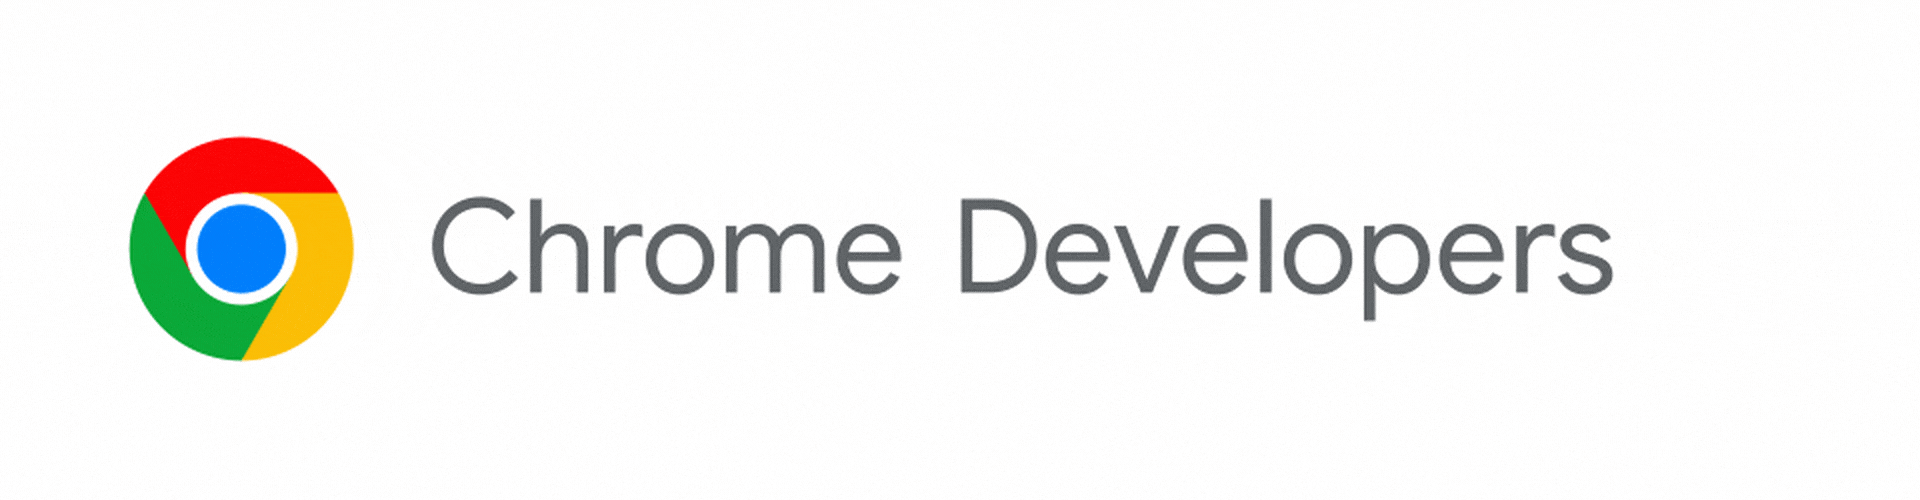 Il logo degli sviluppatori Chrome che si trasforma in Chrome per gli sviluppatori.